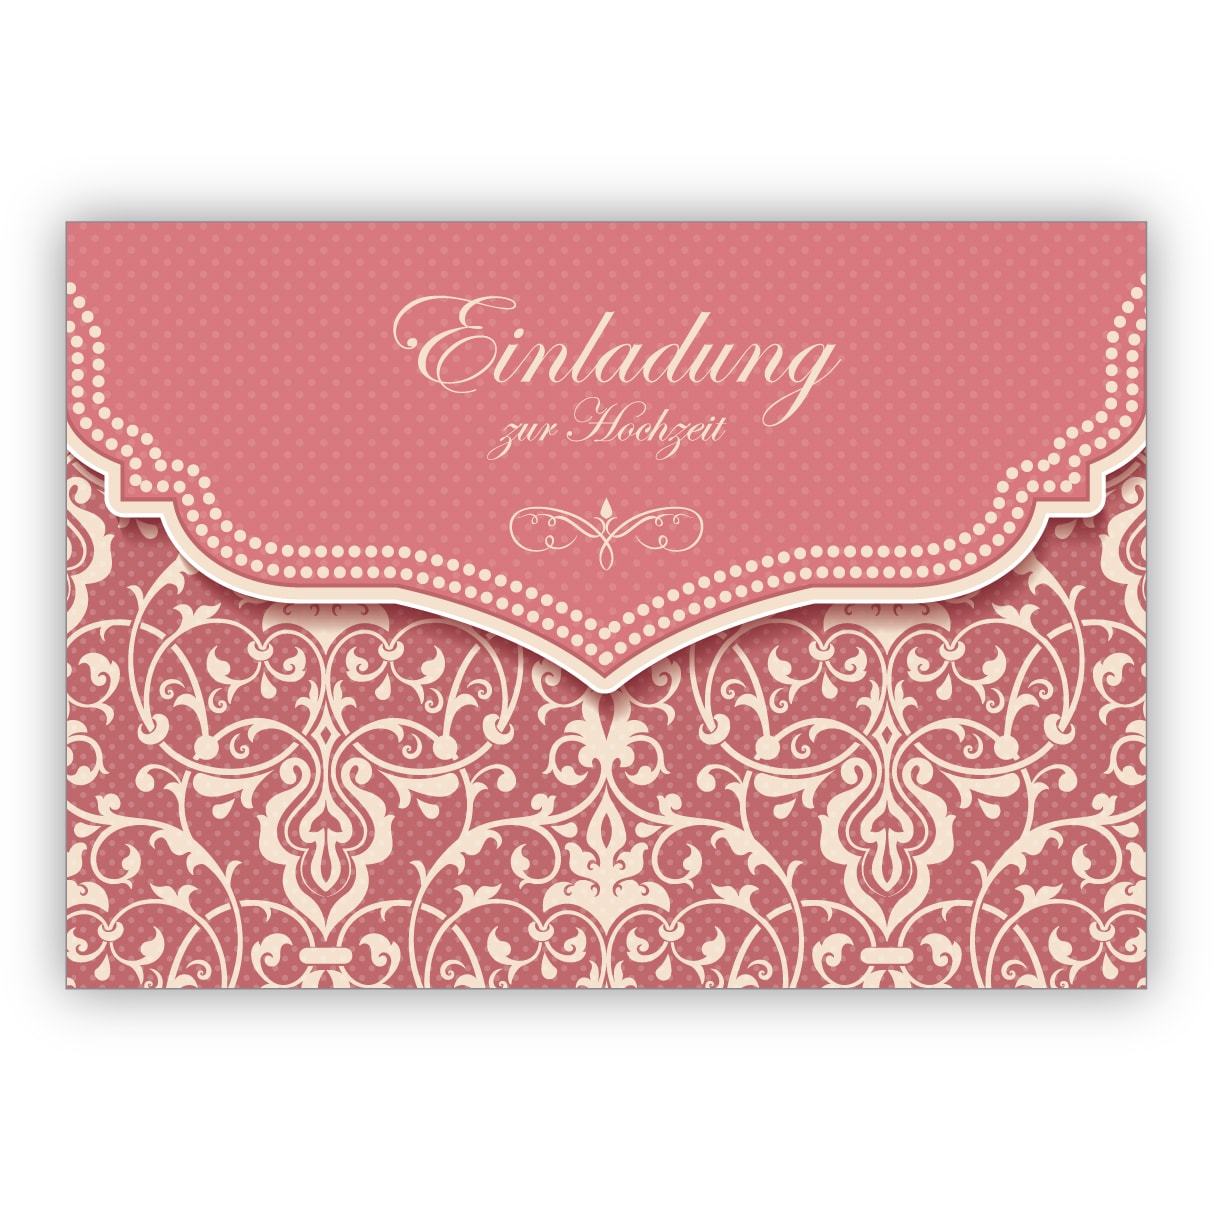 Feine Vintage Einladungskarte mit Retro Damast Muster in zartem alt rosa für Brautpaare: Einladung zur Hochzeit